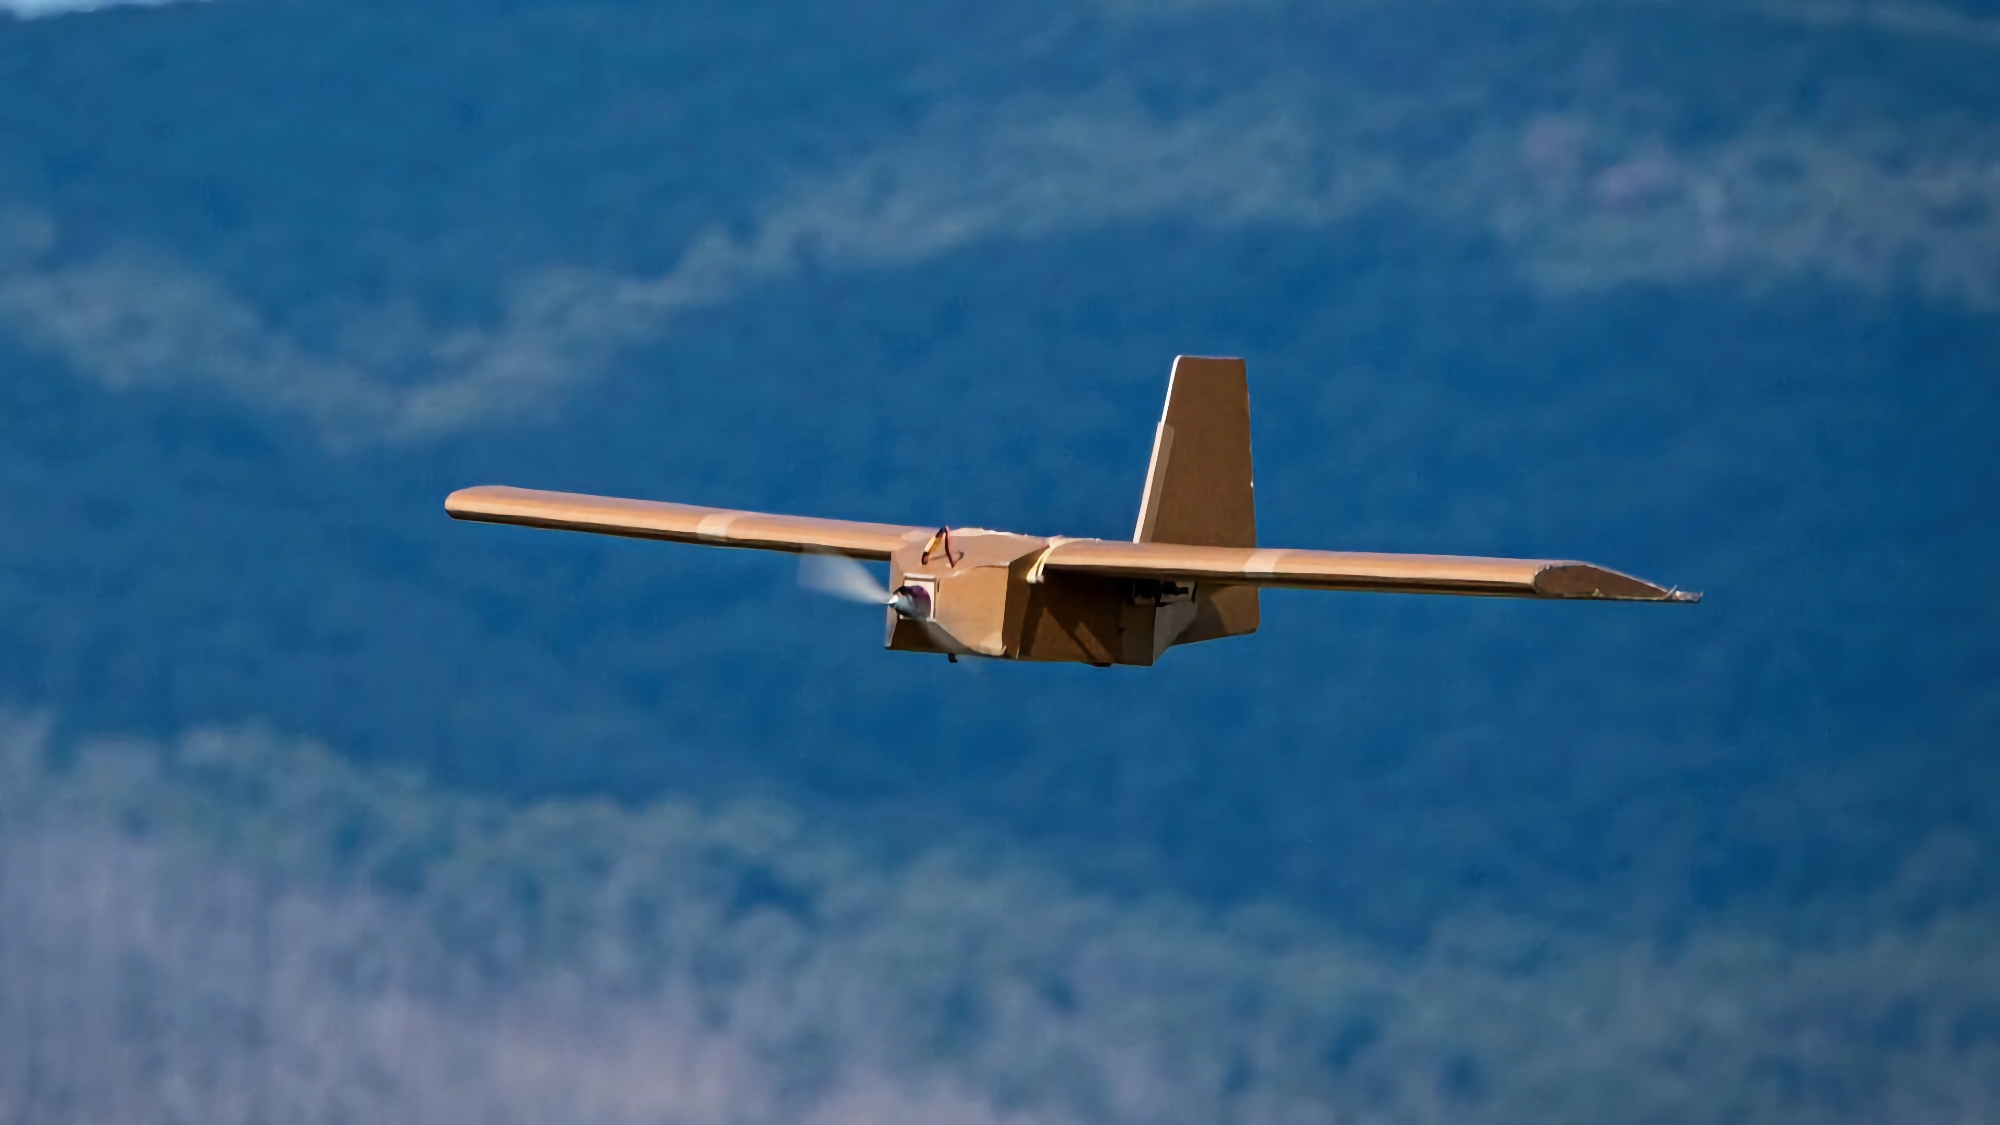 Australien skickar cirka 100 PPDS-drönare till Ukraina varje månad, UAV:n kan bära upp till 3 kg sprängämnen och flyga upp till 120 km bort